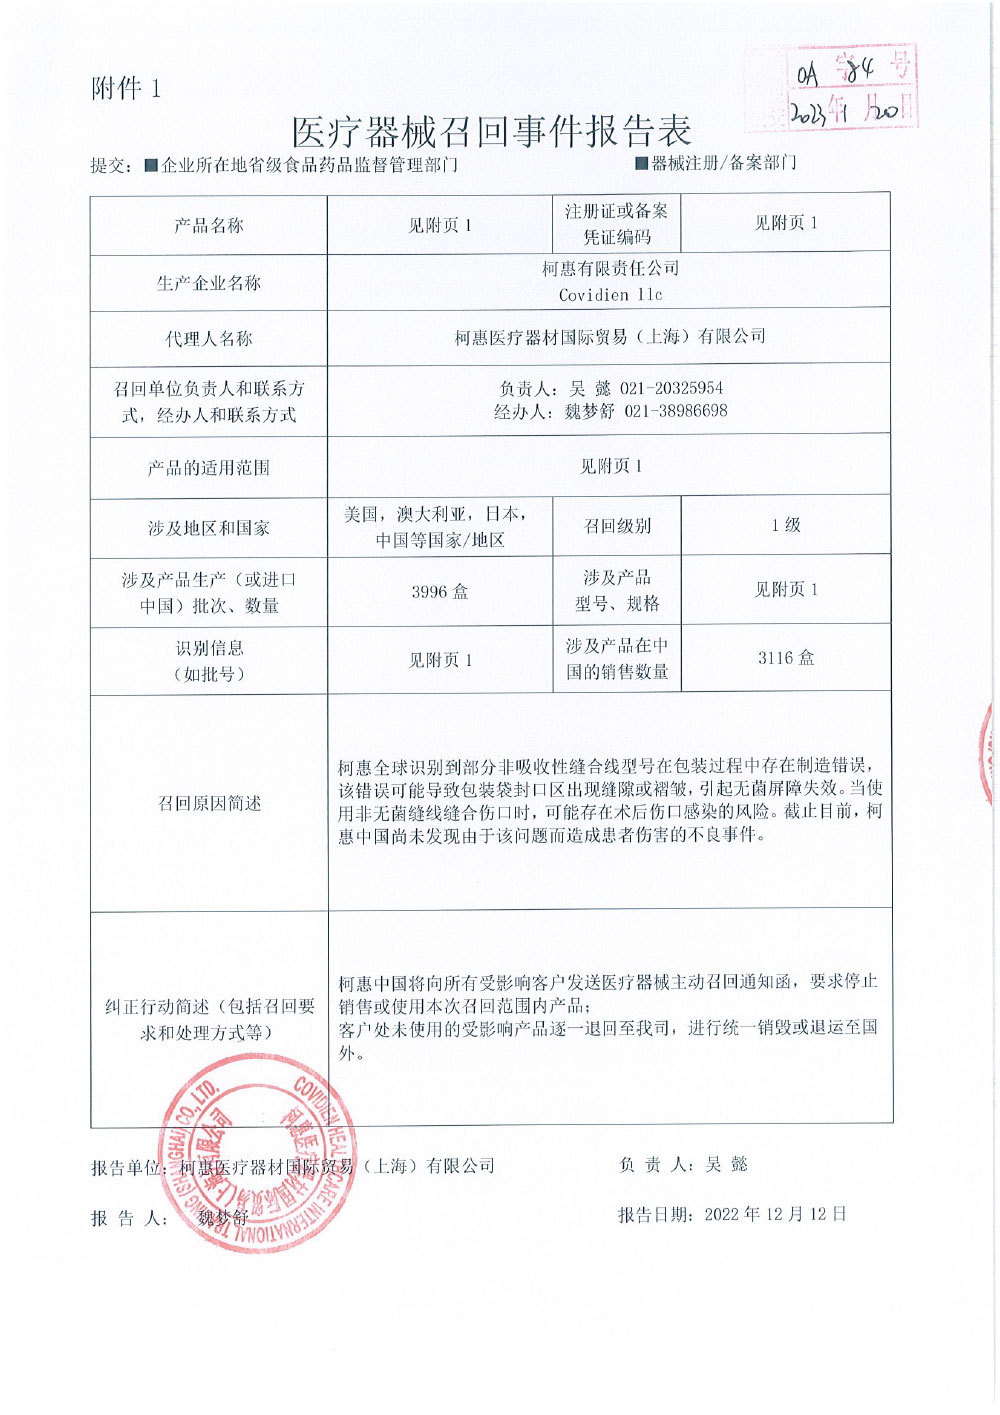 柯惠医疗器材国际贸易（上海）有限公司报告，由于涉及特定型号、特定批次产品在包装过程中存在错误，可能导致产品无菌屏障失效。